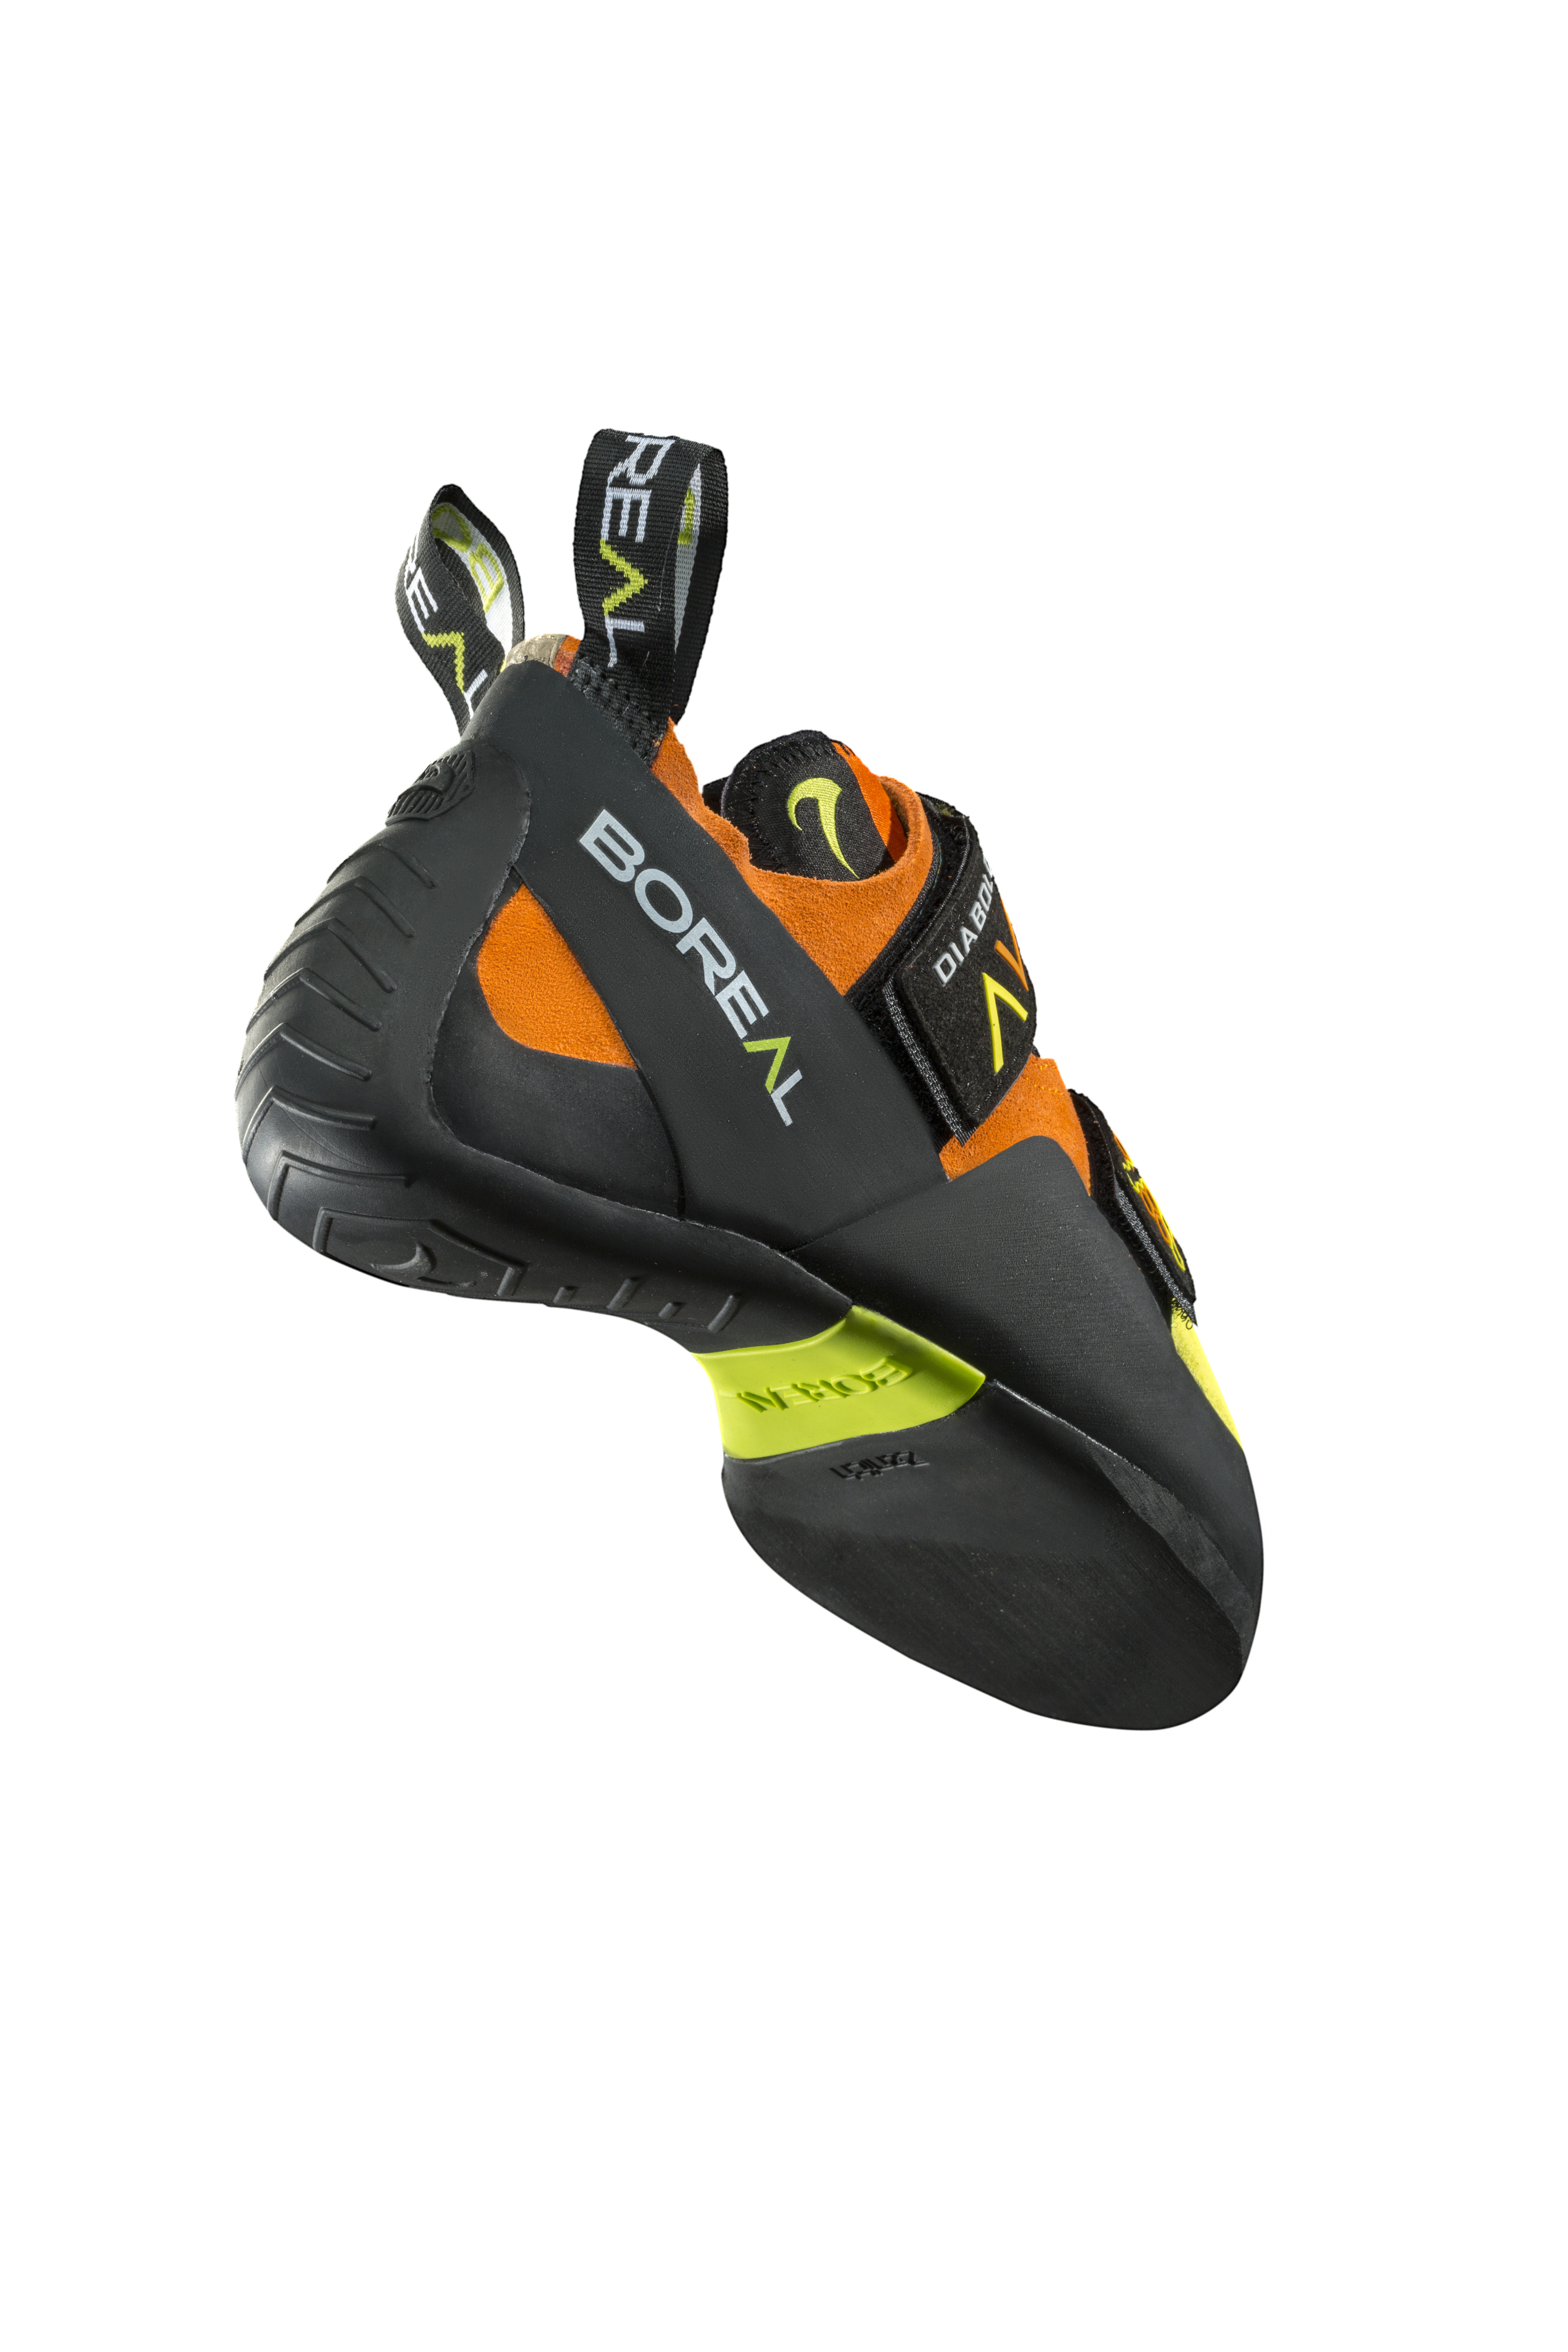 boreal rock climbing shoes